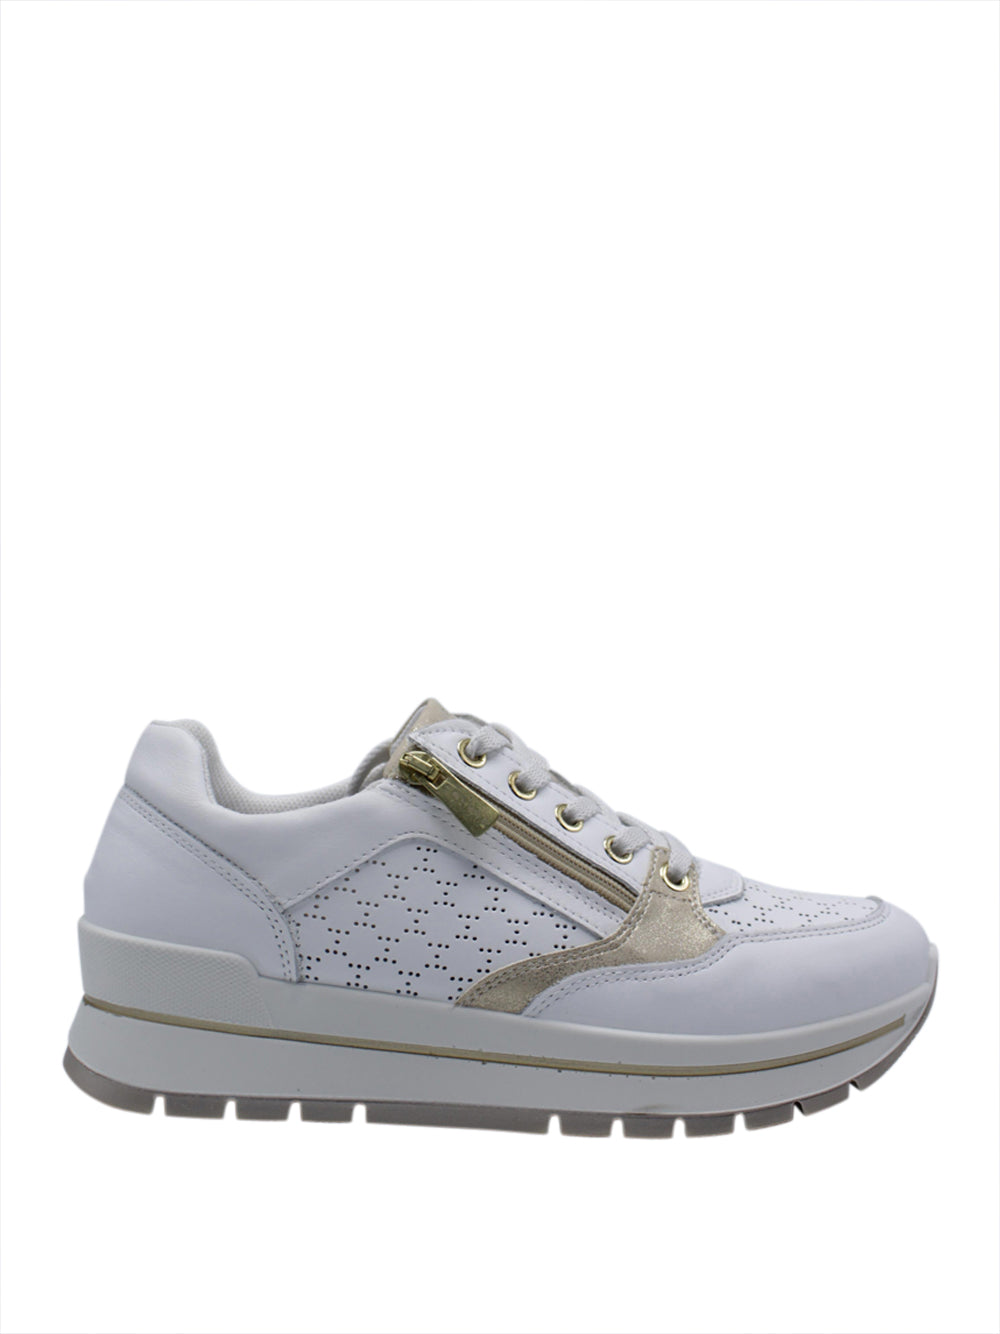 IGI&CO Sneakers Donna - Bianco modello 5662100